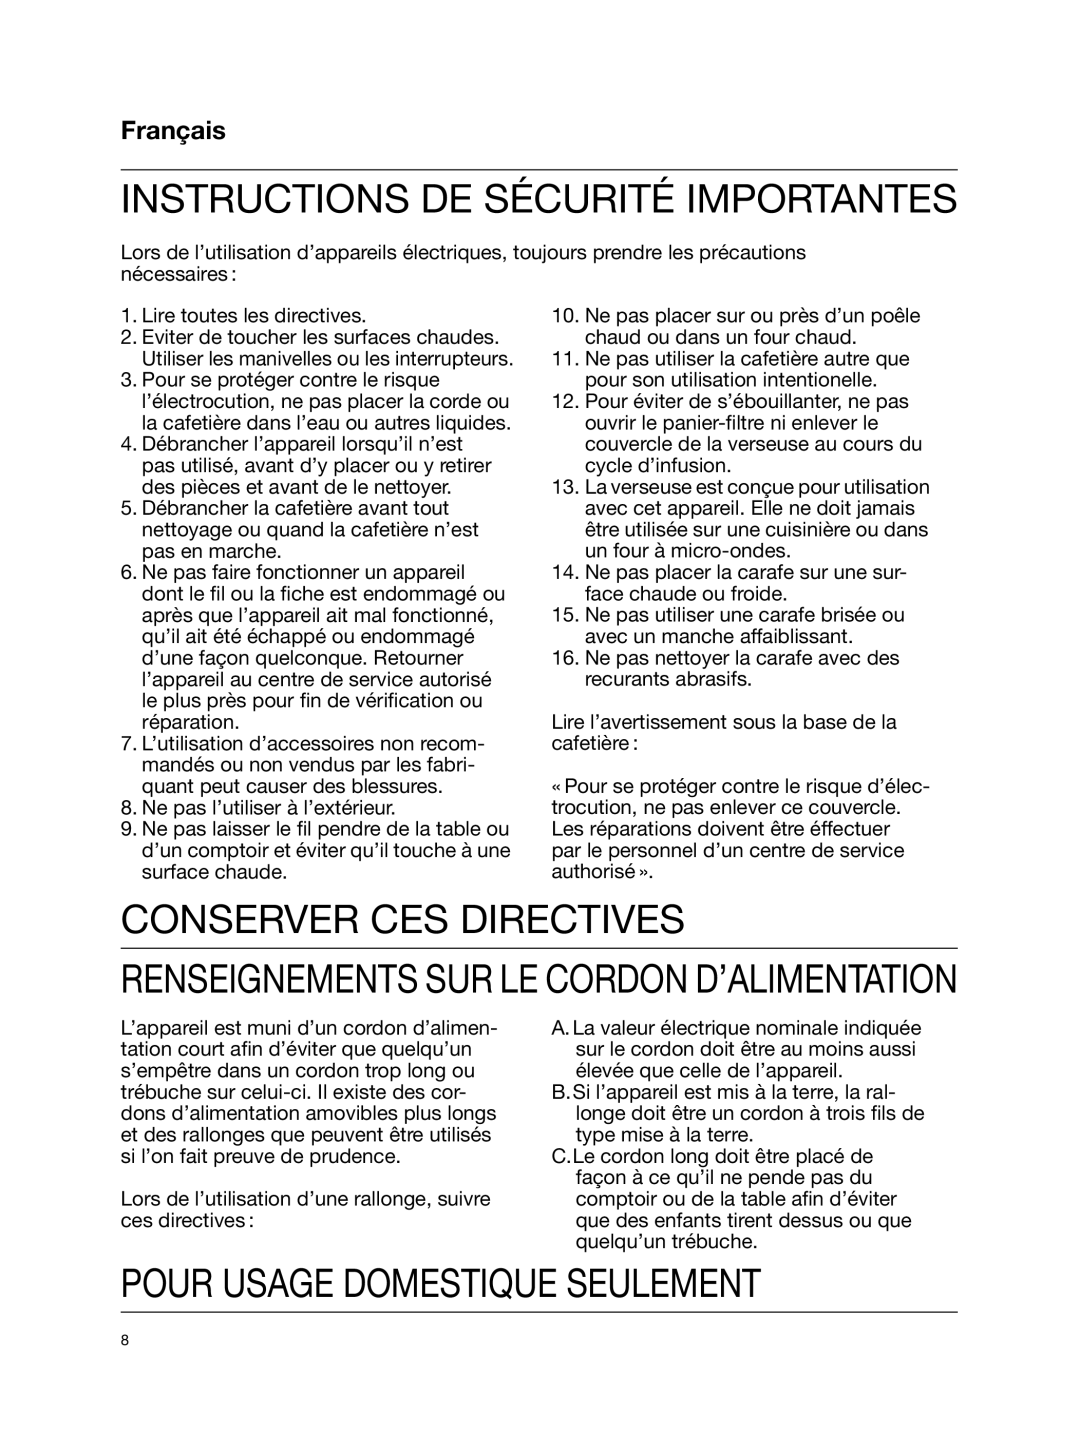 Braun KF580 Conserver Ces Directives, Pour Usage Domestique Seulement, Français, Instructions De Sécurité Importantes 